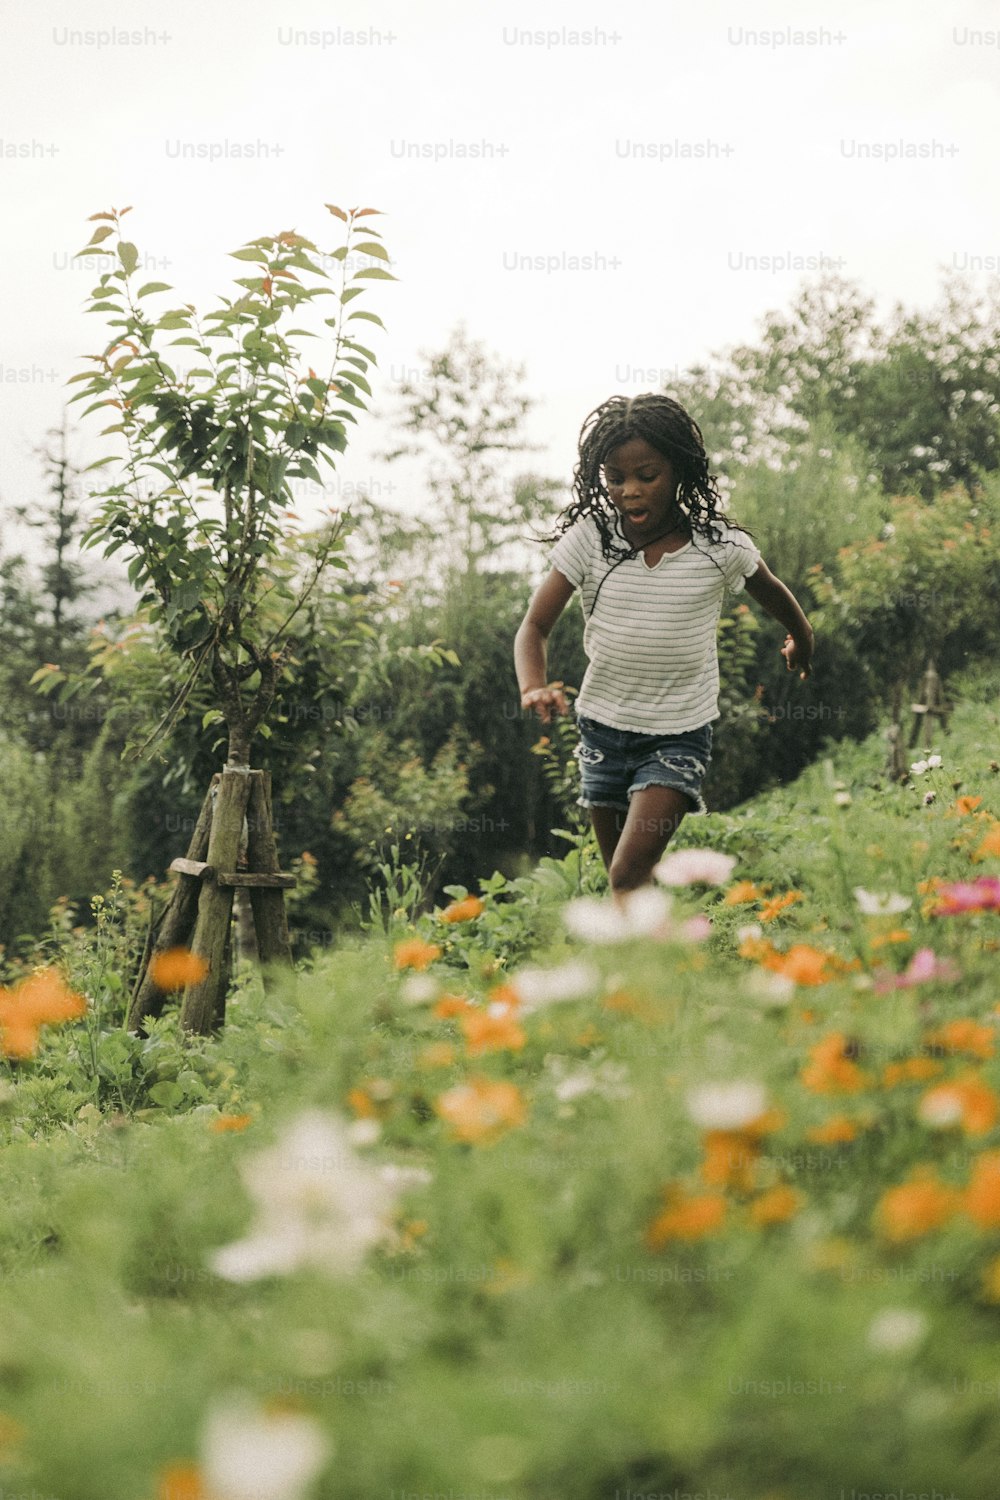 꽃밭을 달리는 어린 소녀